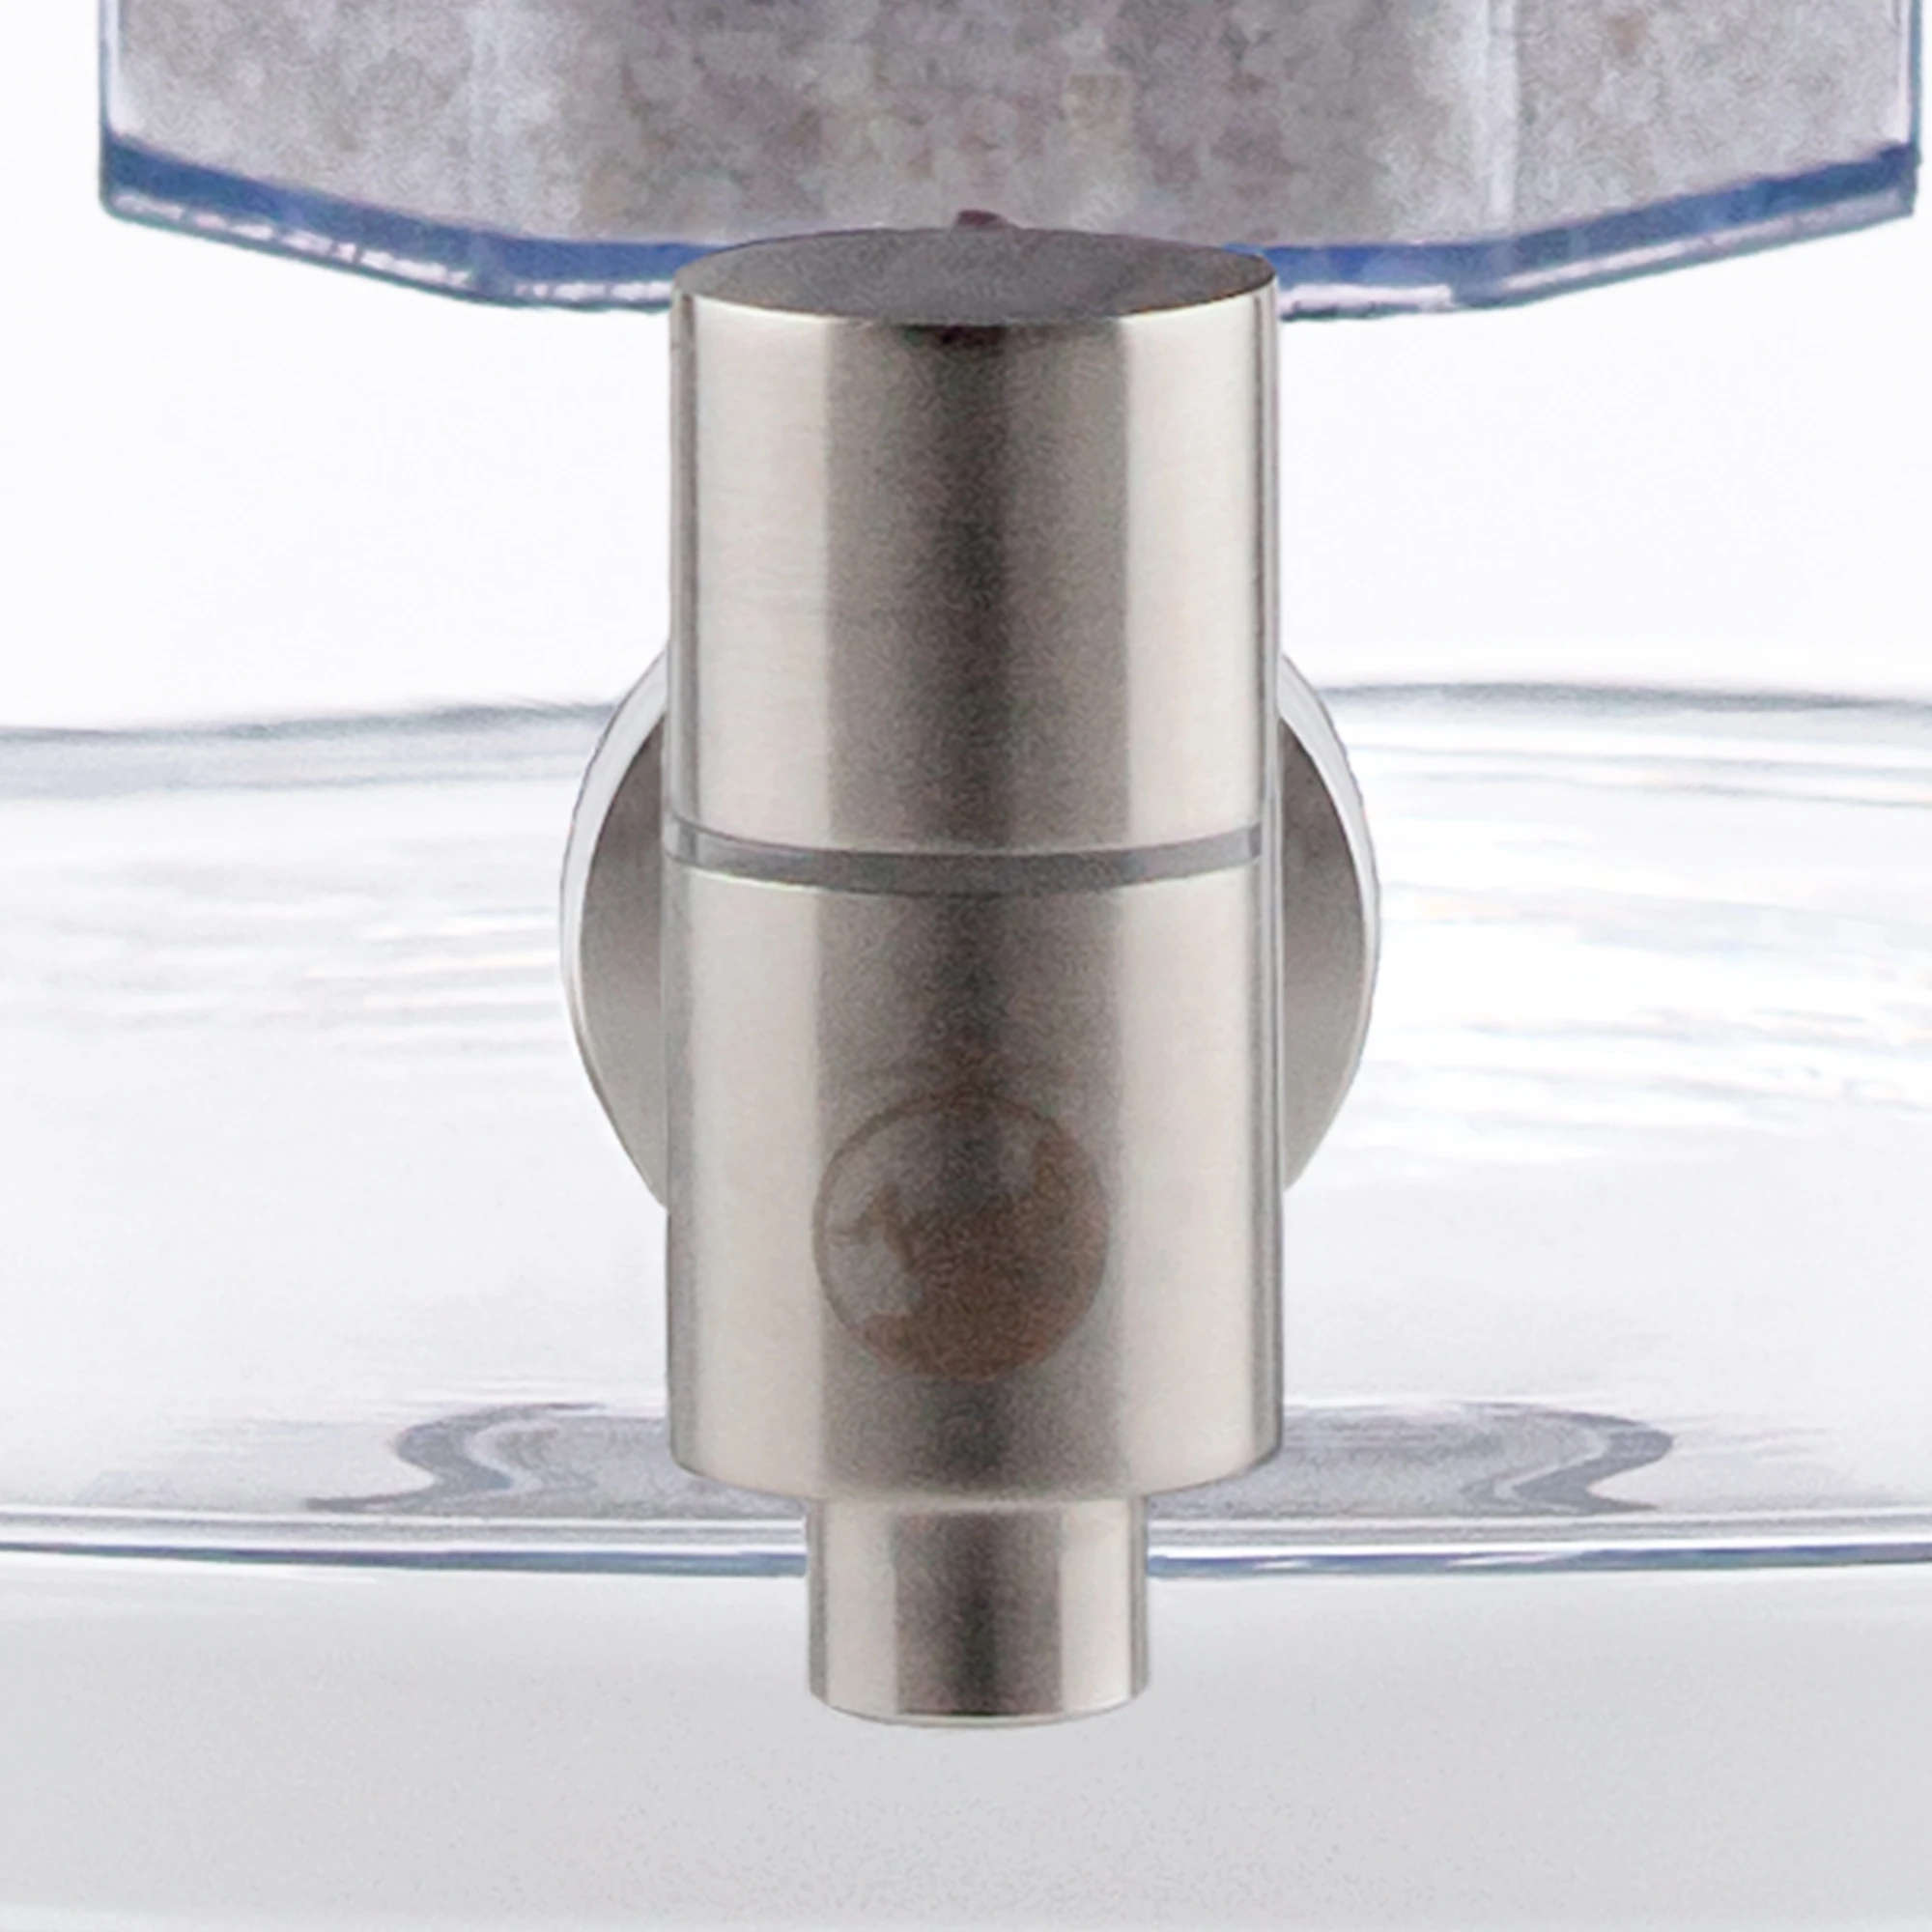 Zu sehen ist der Edelstahl Wasserhahn Makino für Acala Stand Wasserfilter an einem Glastank in kristallklar montiert in Großaufnahme. Der Hahn ist silber und man sieht das AcalaQuell Logo darauf.